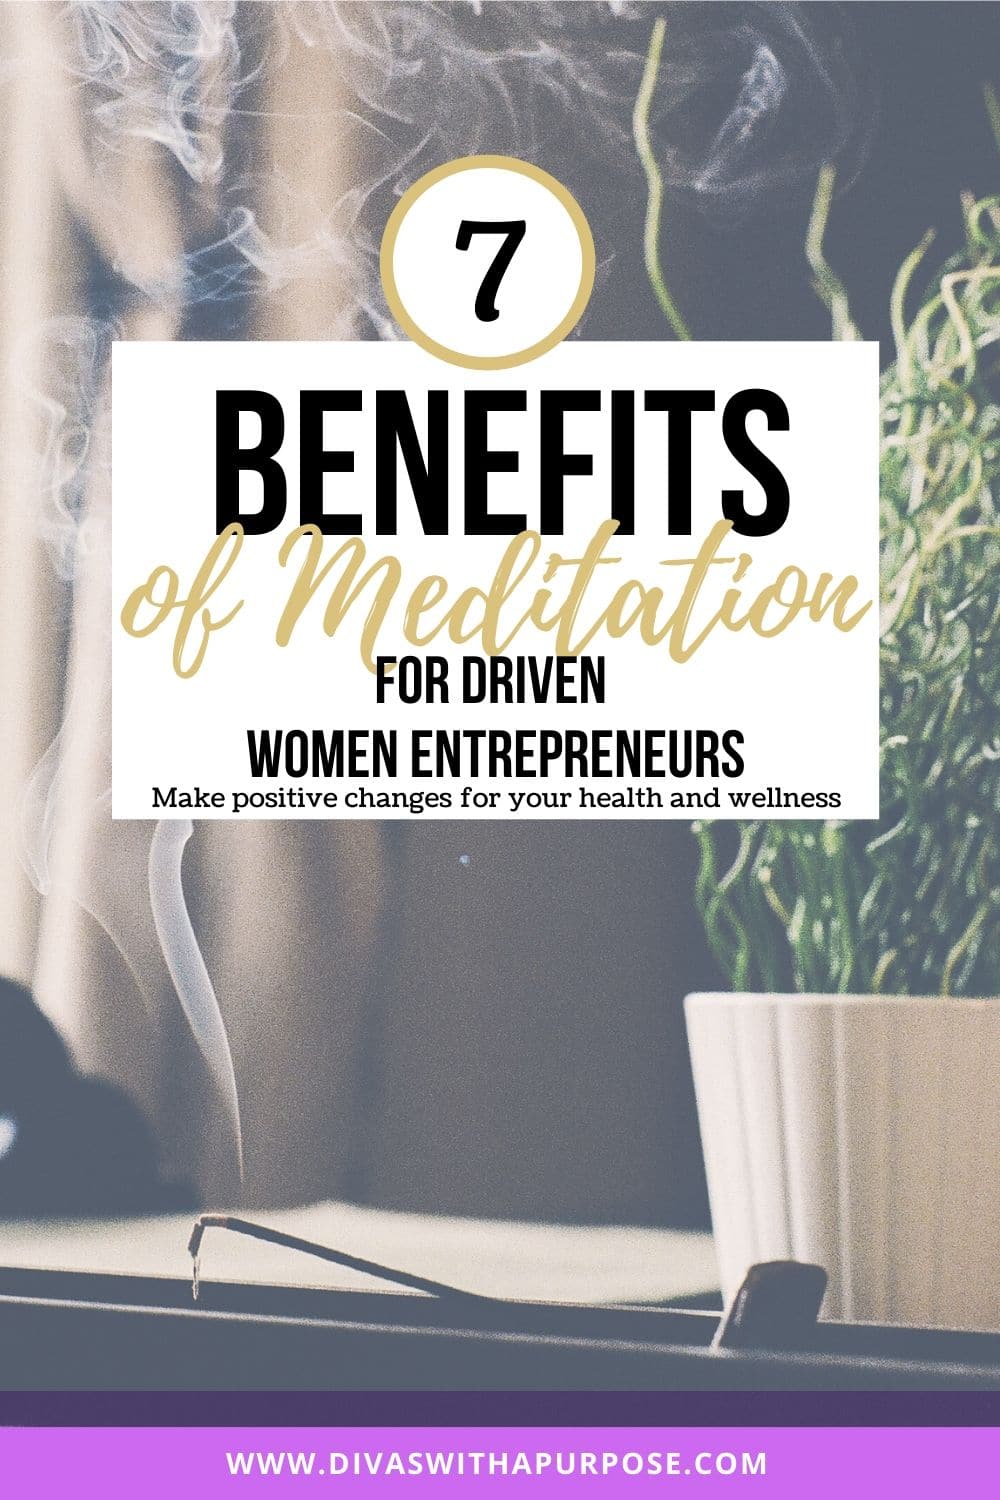 Seven benefits of meditation for driven women entrepreneurs